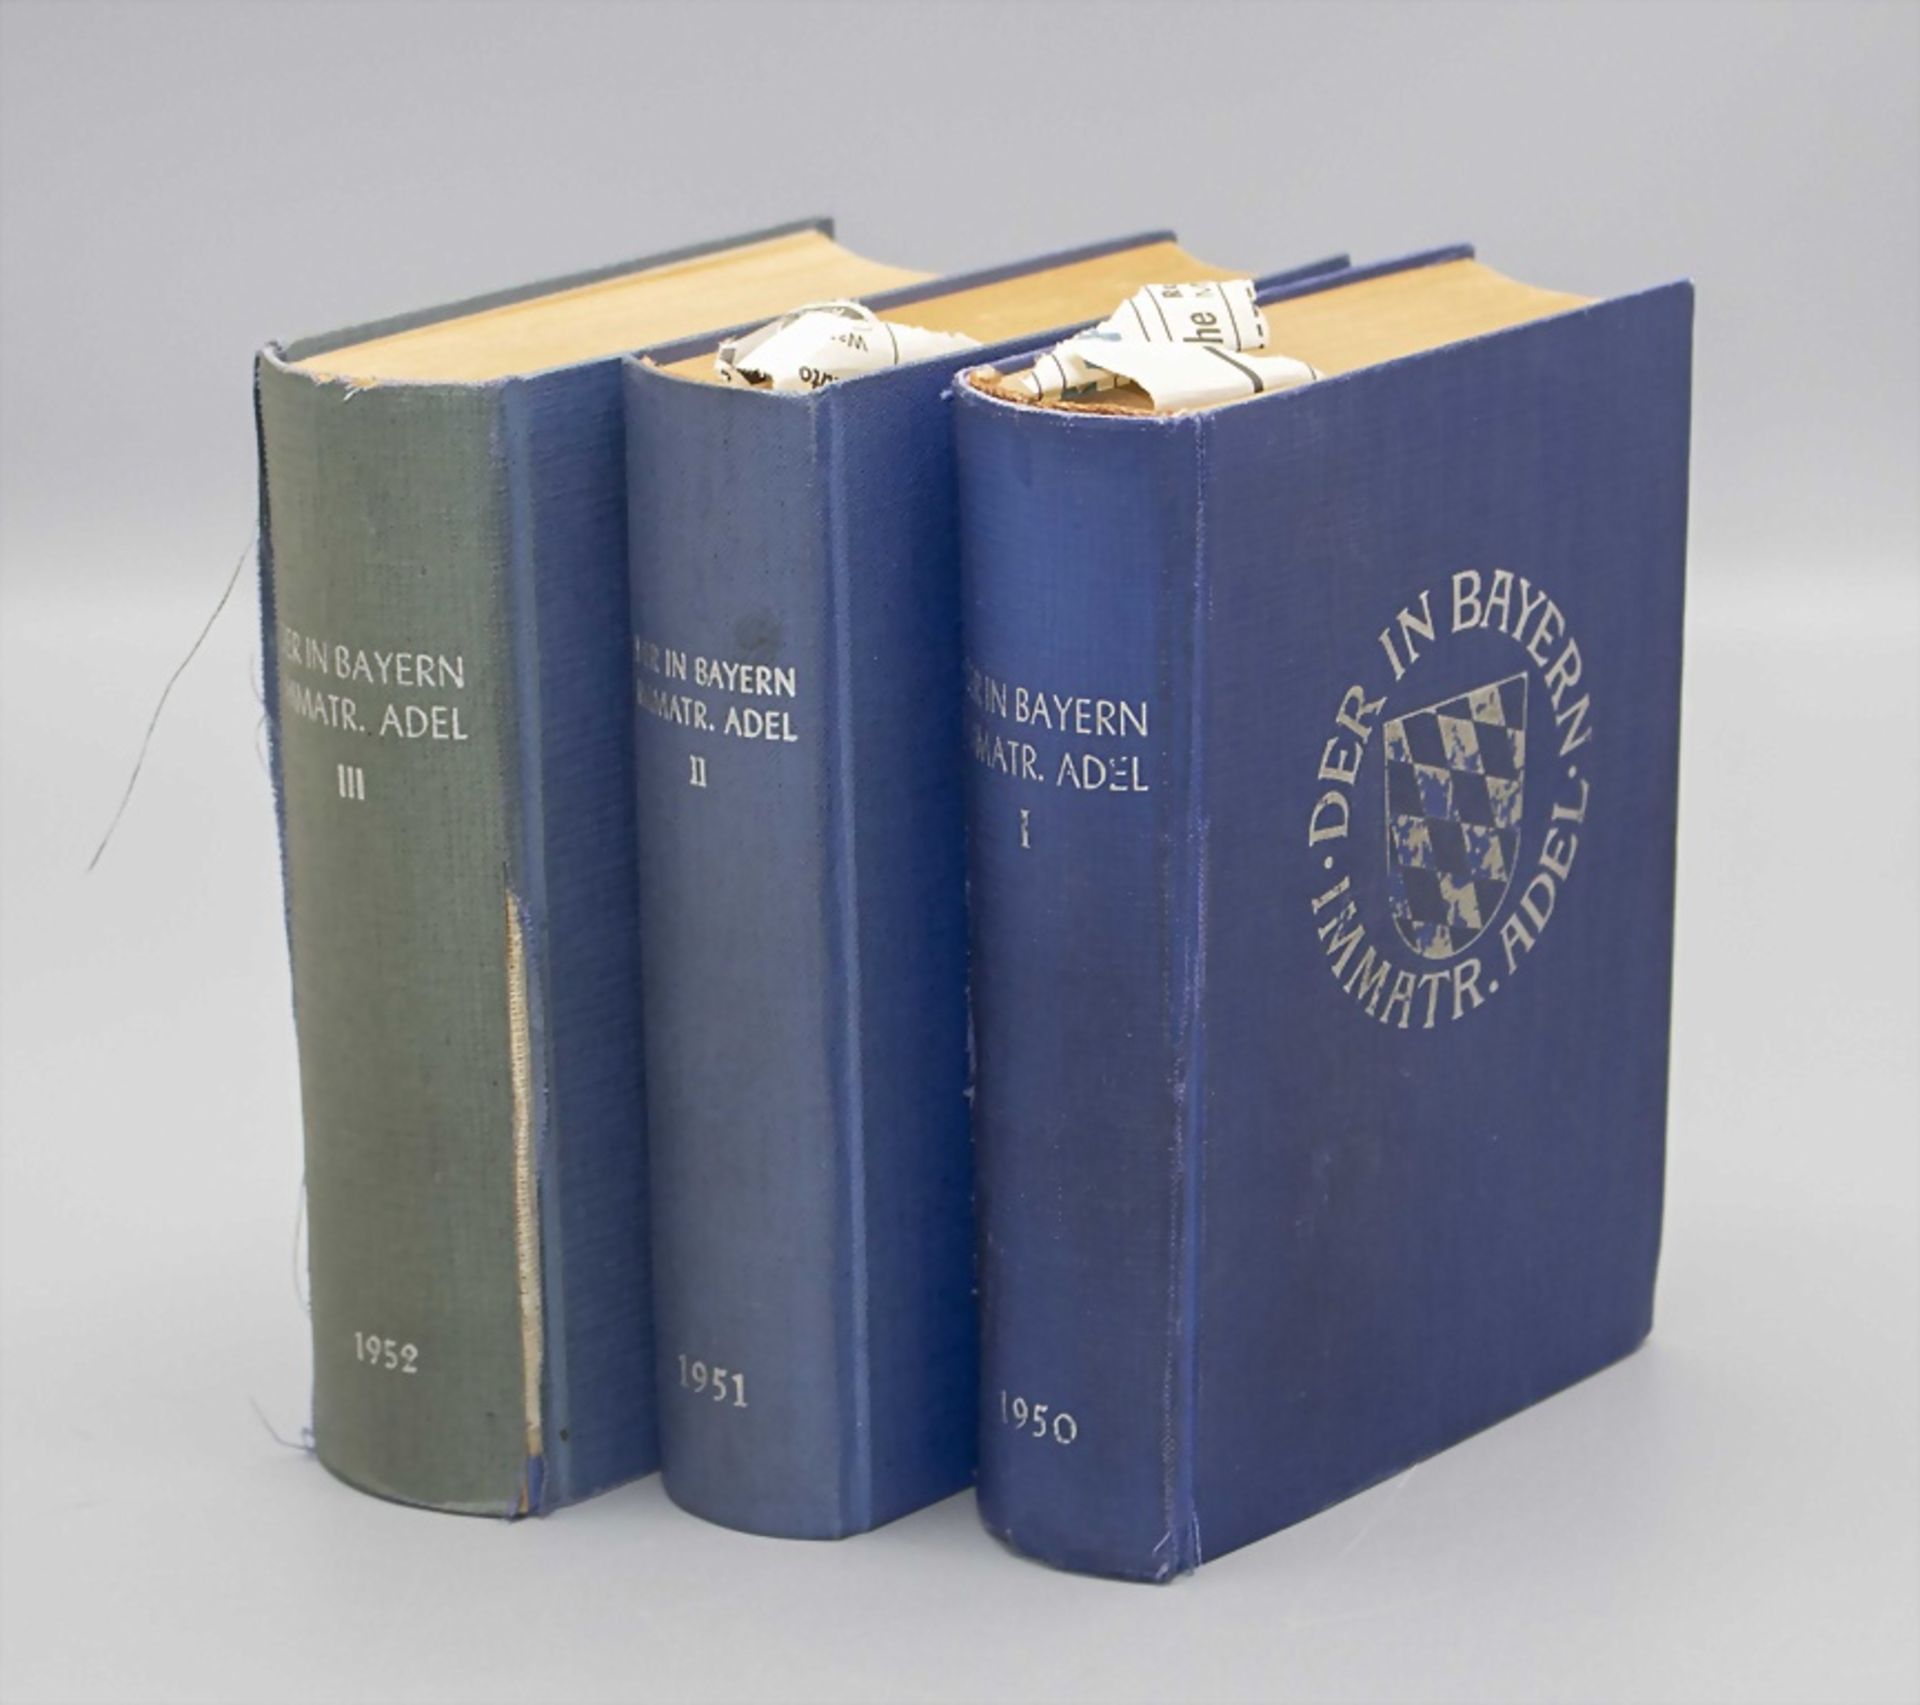 Genealogisches Handbuch des in Bayern immatrikulierten Adels, 1950-1952